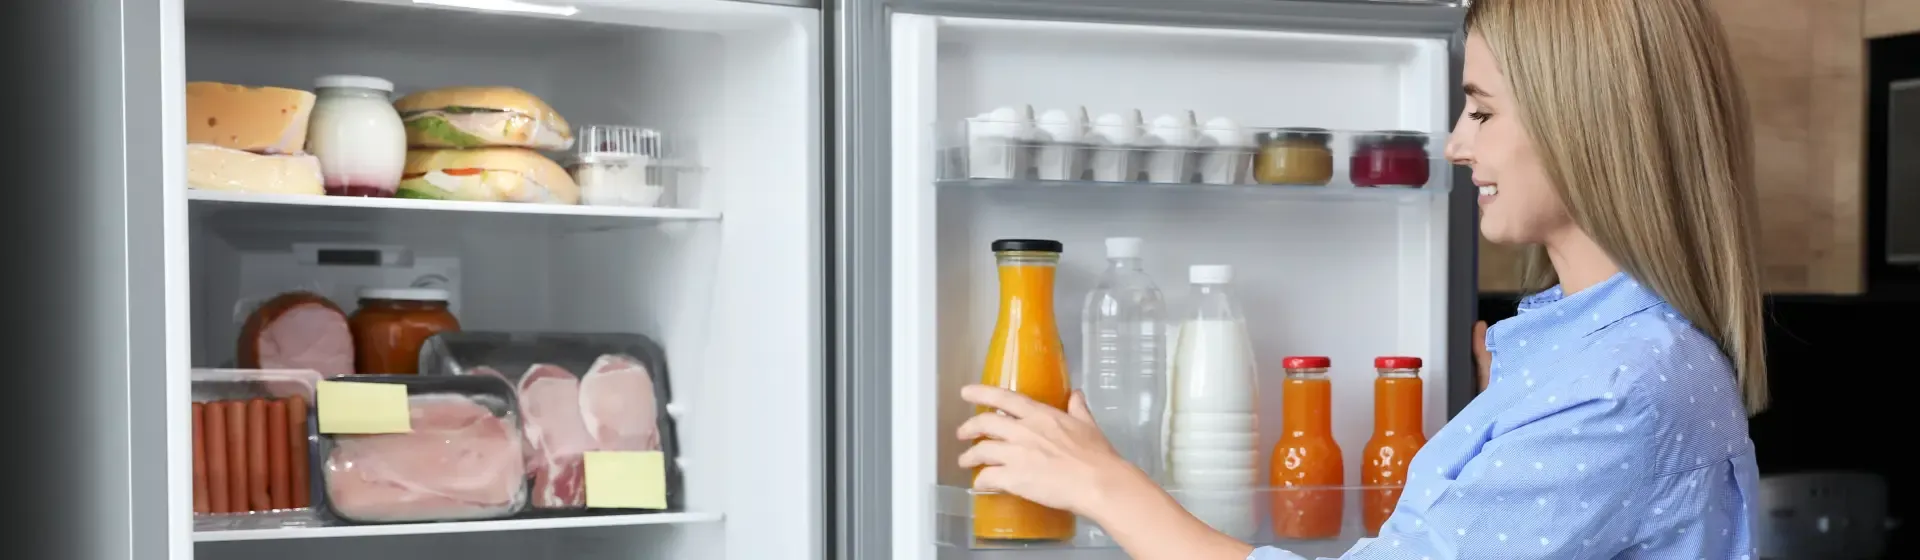 Mulher mexendo na geladeira aberta com frios e suco de laranja